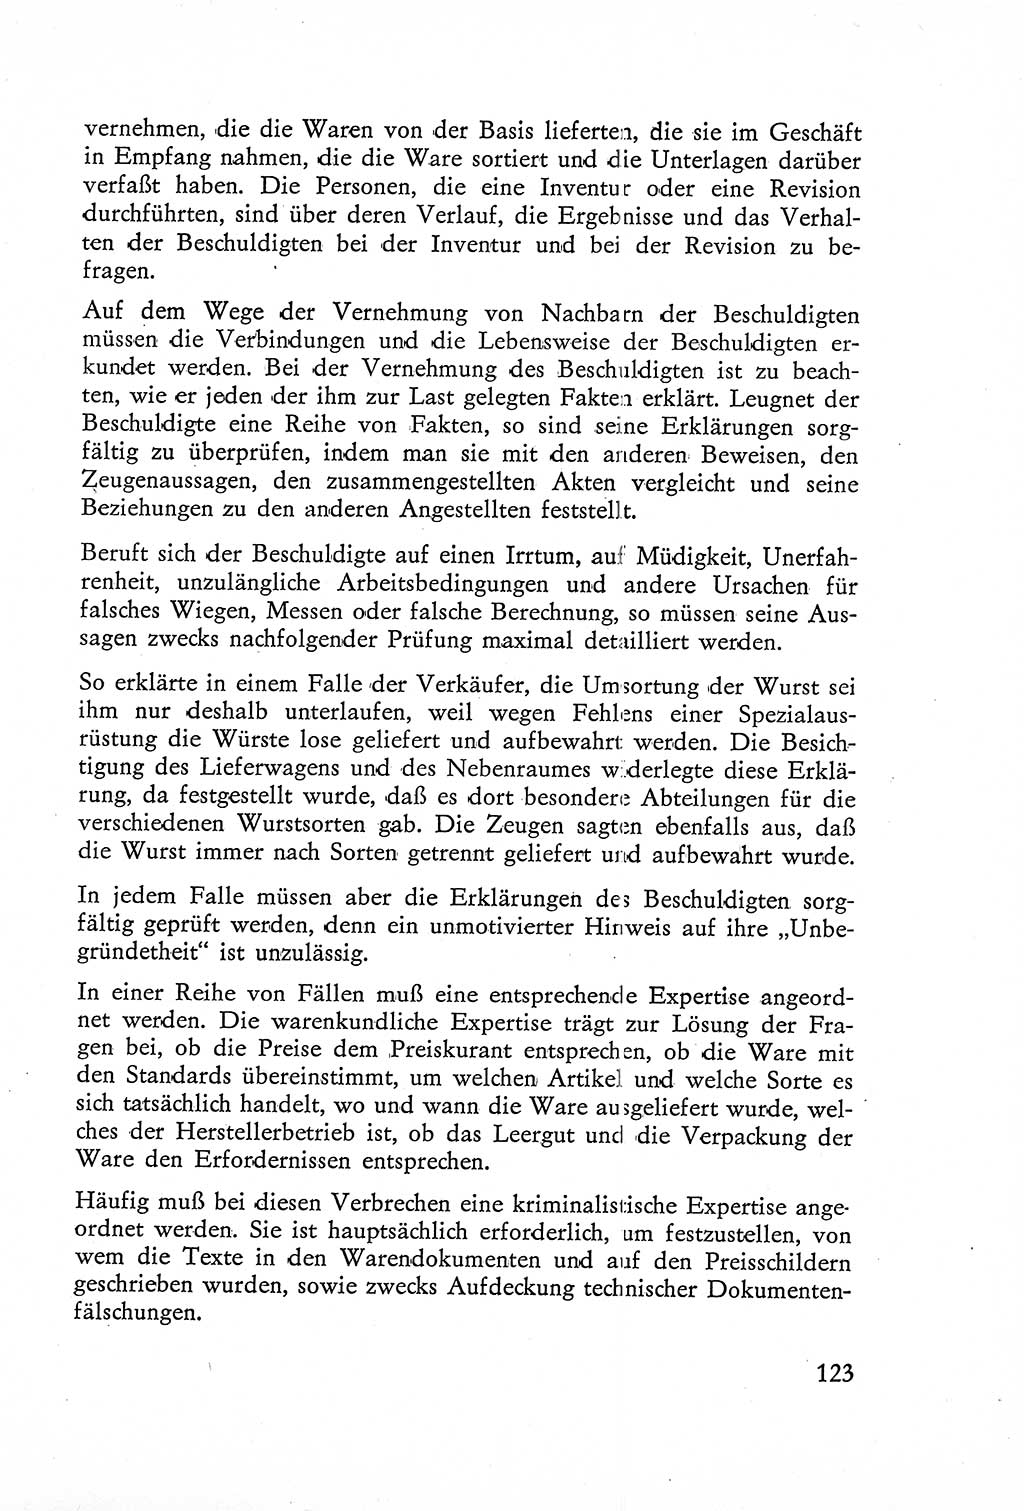 Die Untersuchung einzelner Verbrechensarten [Deutsche Demokratische Republik (DDR)] 1960, Seite 123 (Unters. Verbr.-Art. DDR 1960, S. 123)